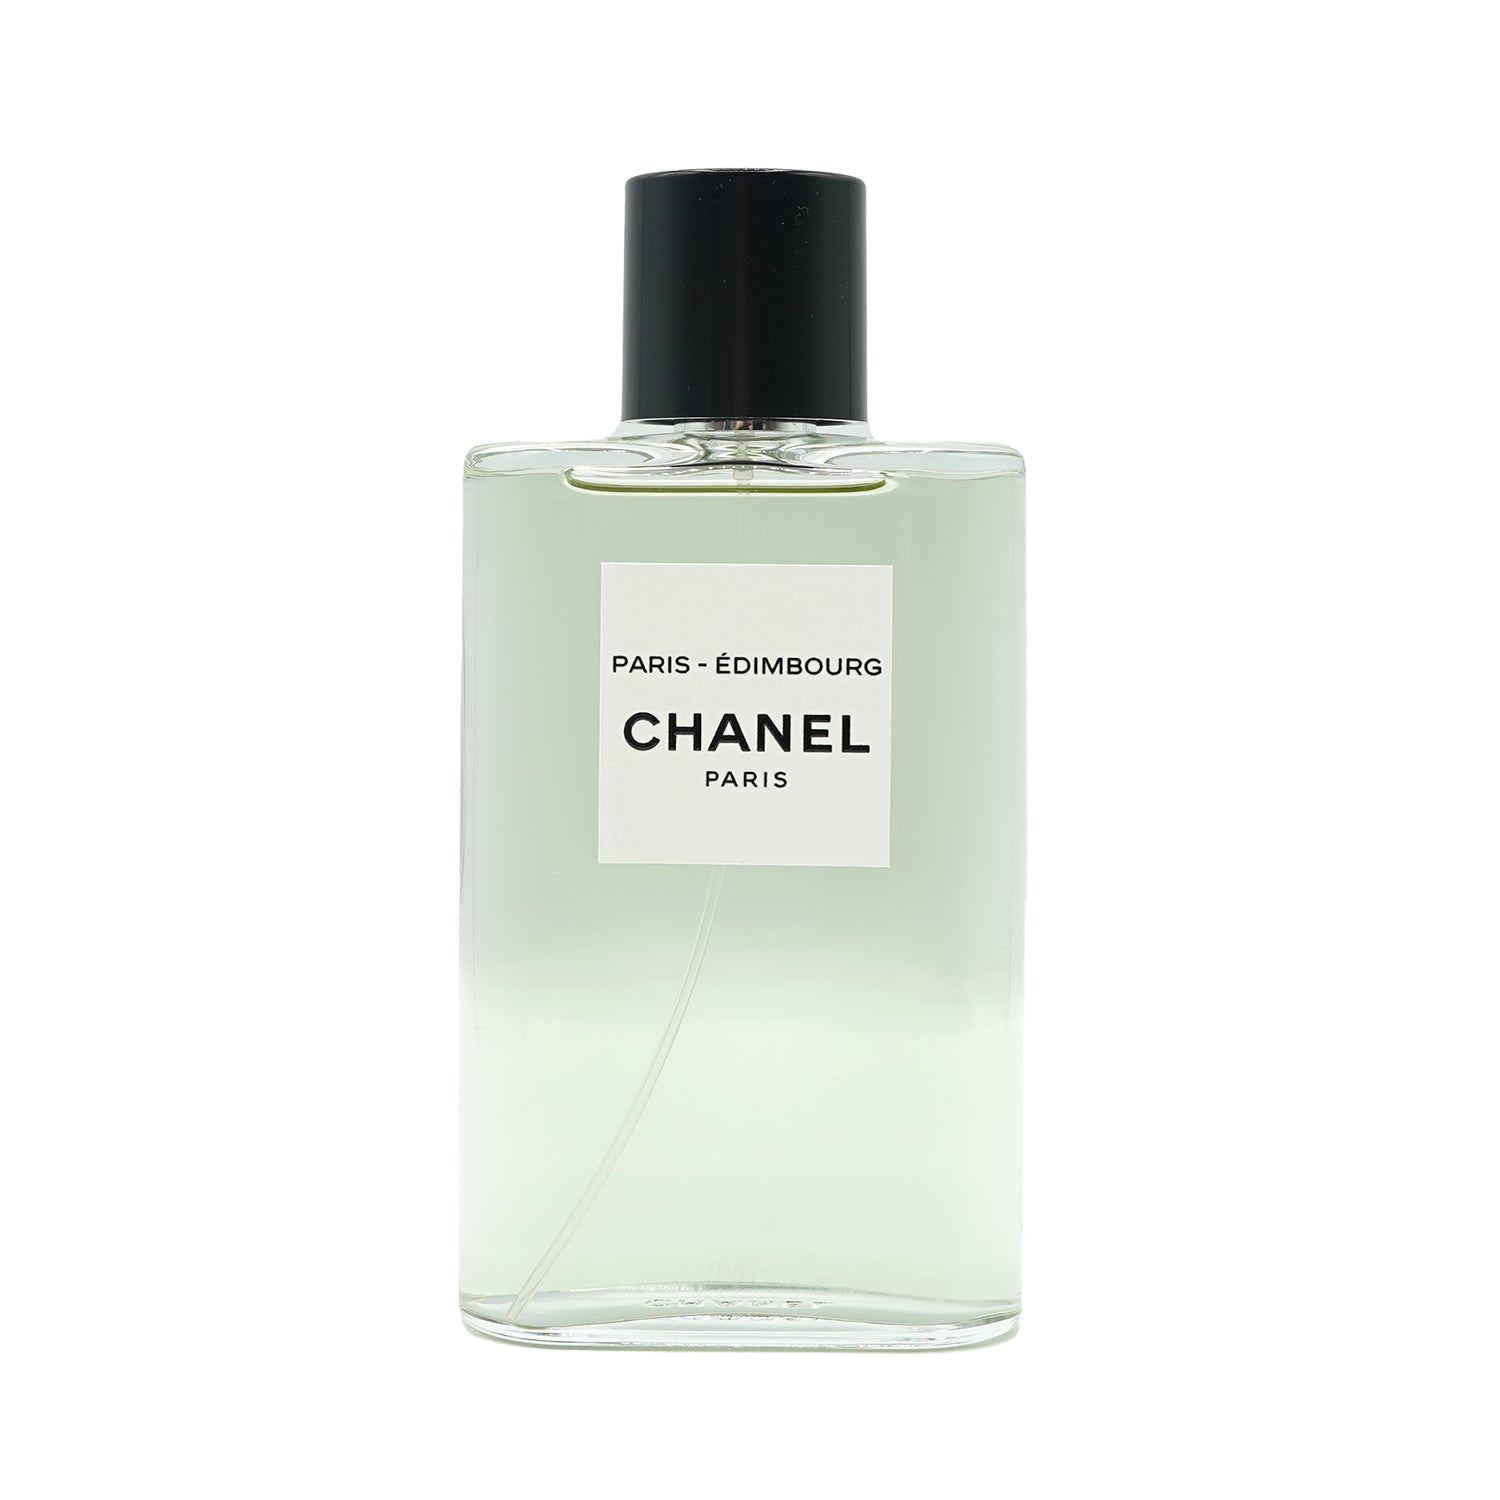 Chanel | Paris - Édimbourg Abfüllung